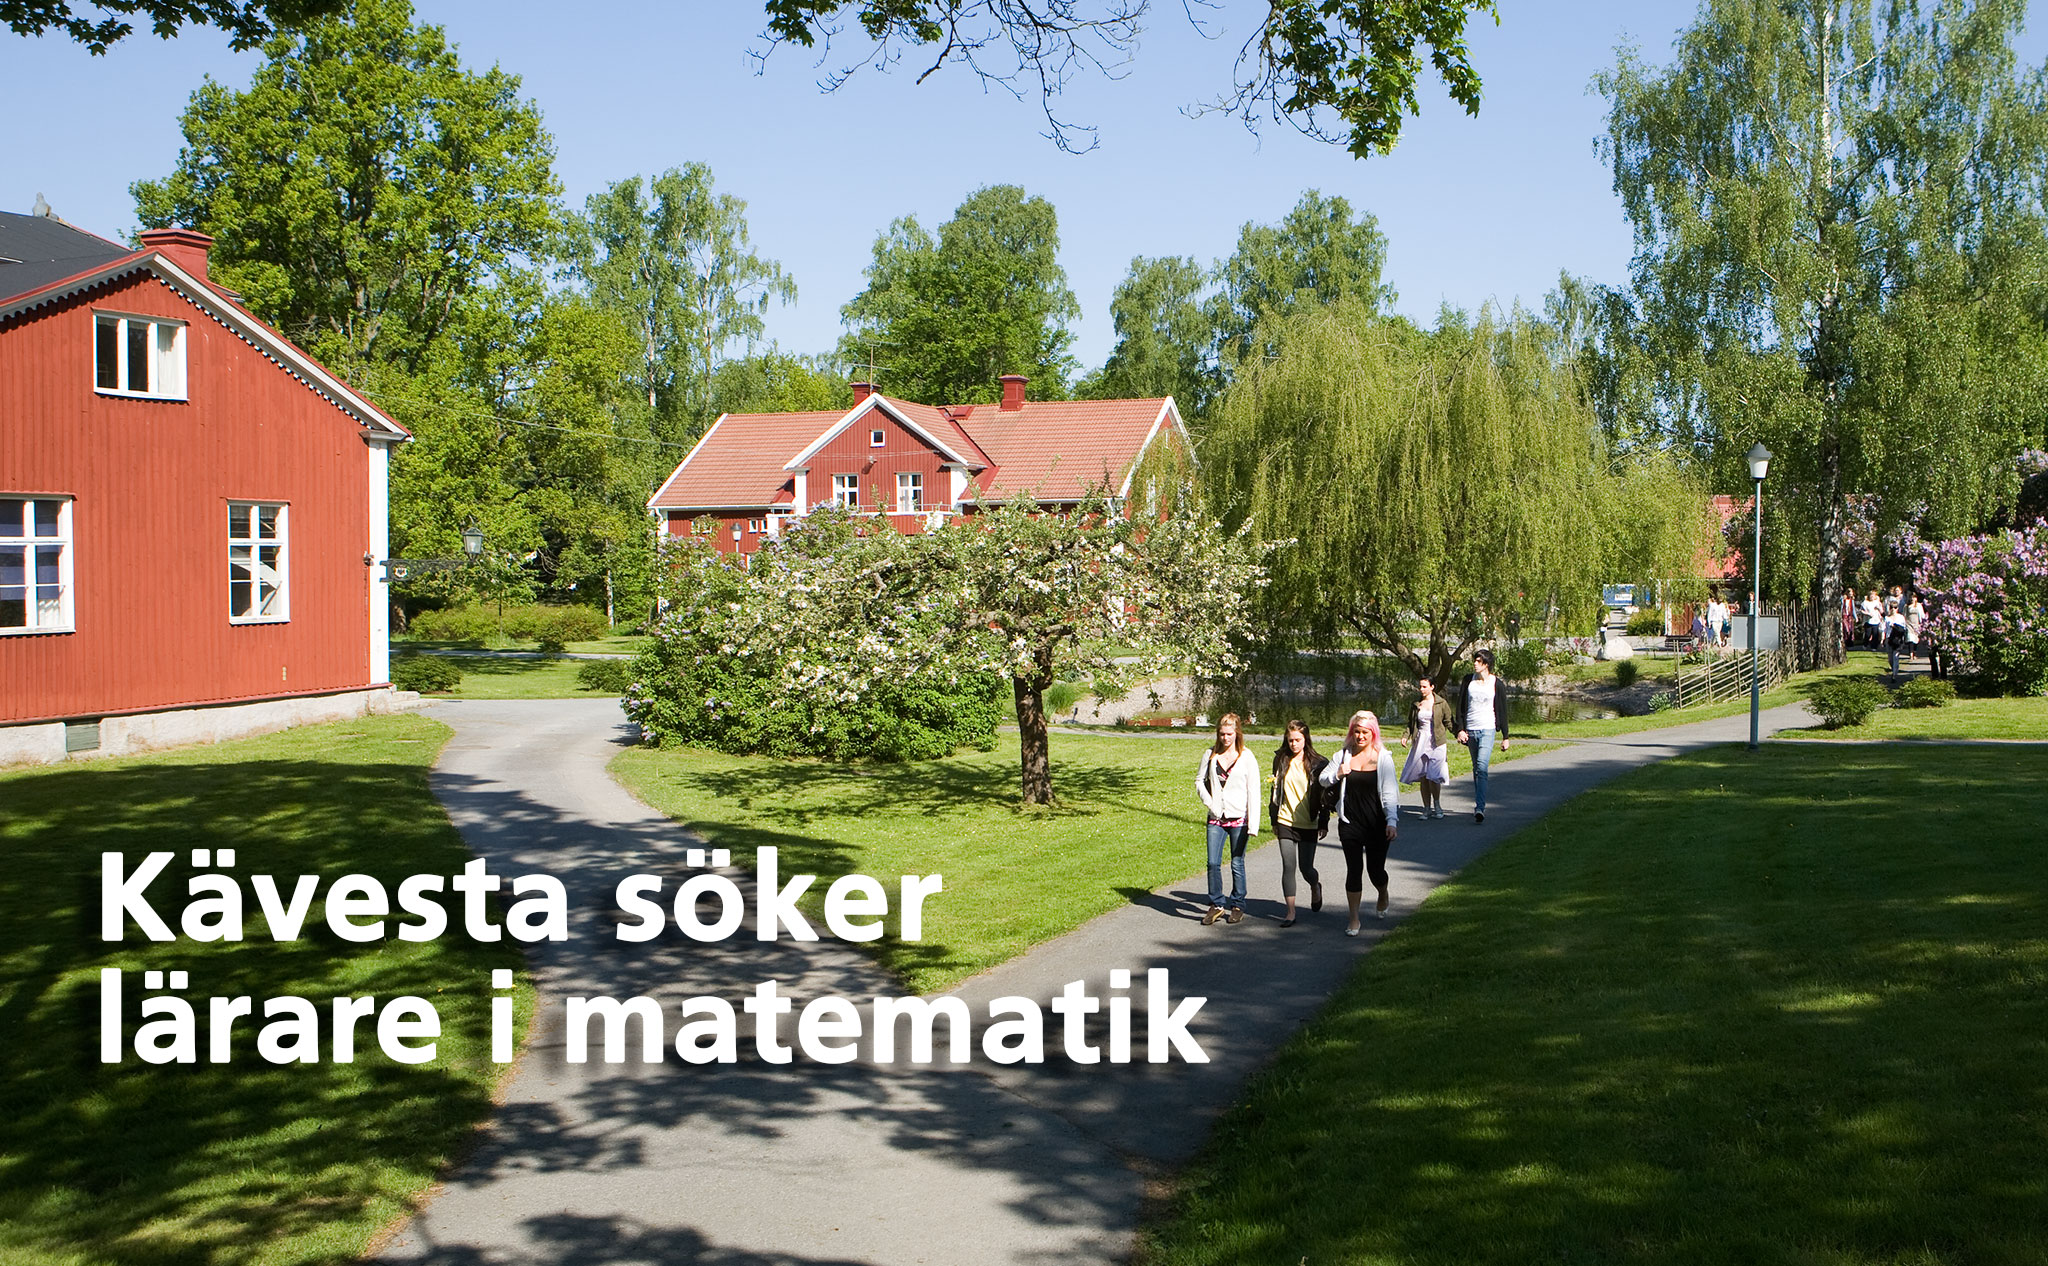 Miljöbild från Kävesta med texten "Kävesta söker lärare i matematik"